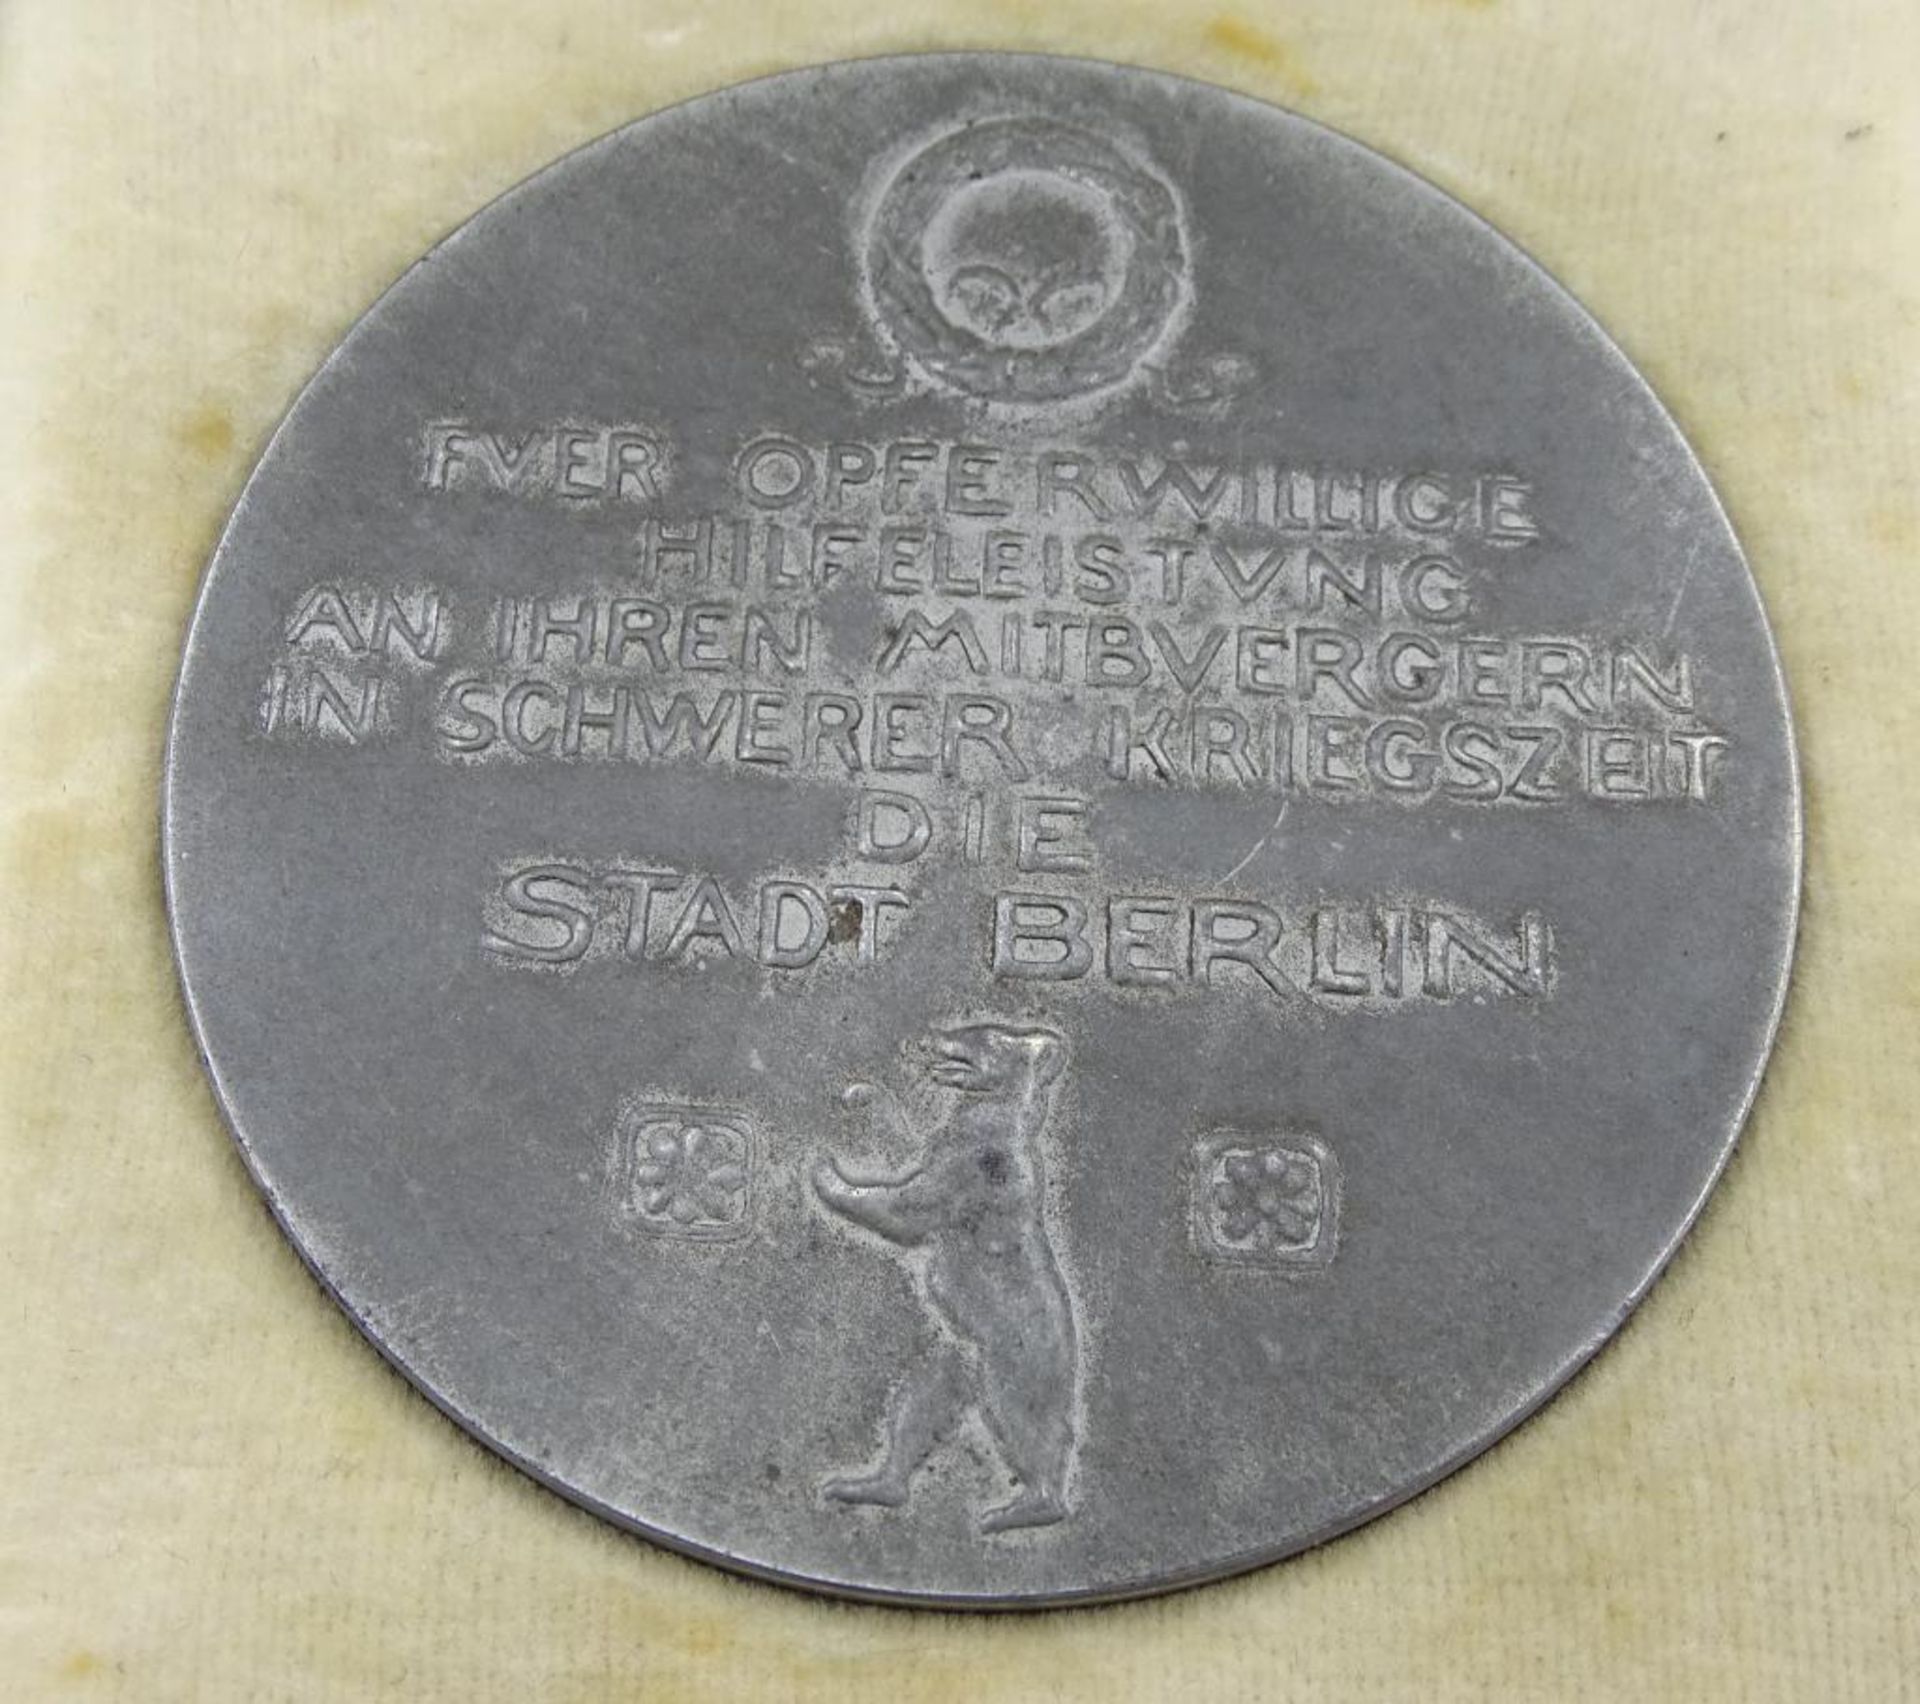 Medaille in Etui "Für opferwillige Hilfeleistung an Ihren Mitbürgern in schwerer Kriegszeit ,Die - Bild 2 aus 3